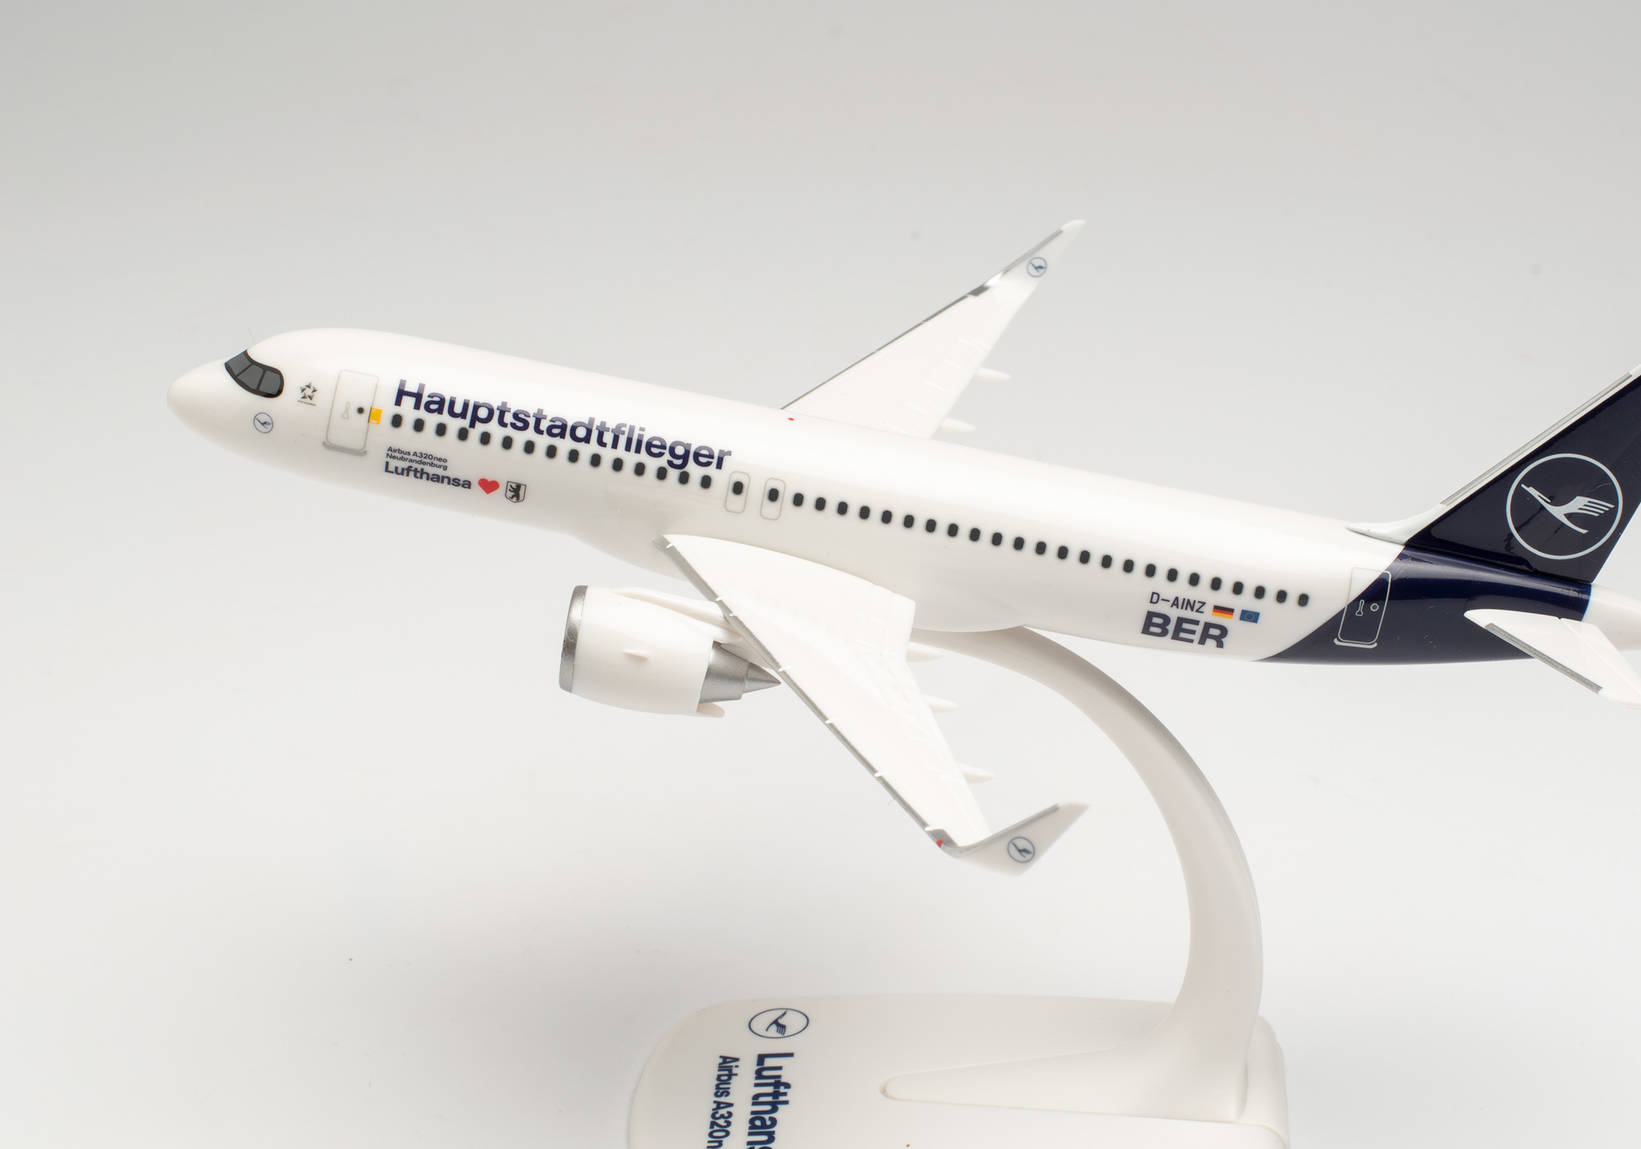 Lufthansa Airbus A320neo “Hauptstadtflieger” – D-AINZ “Berlin”